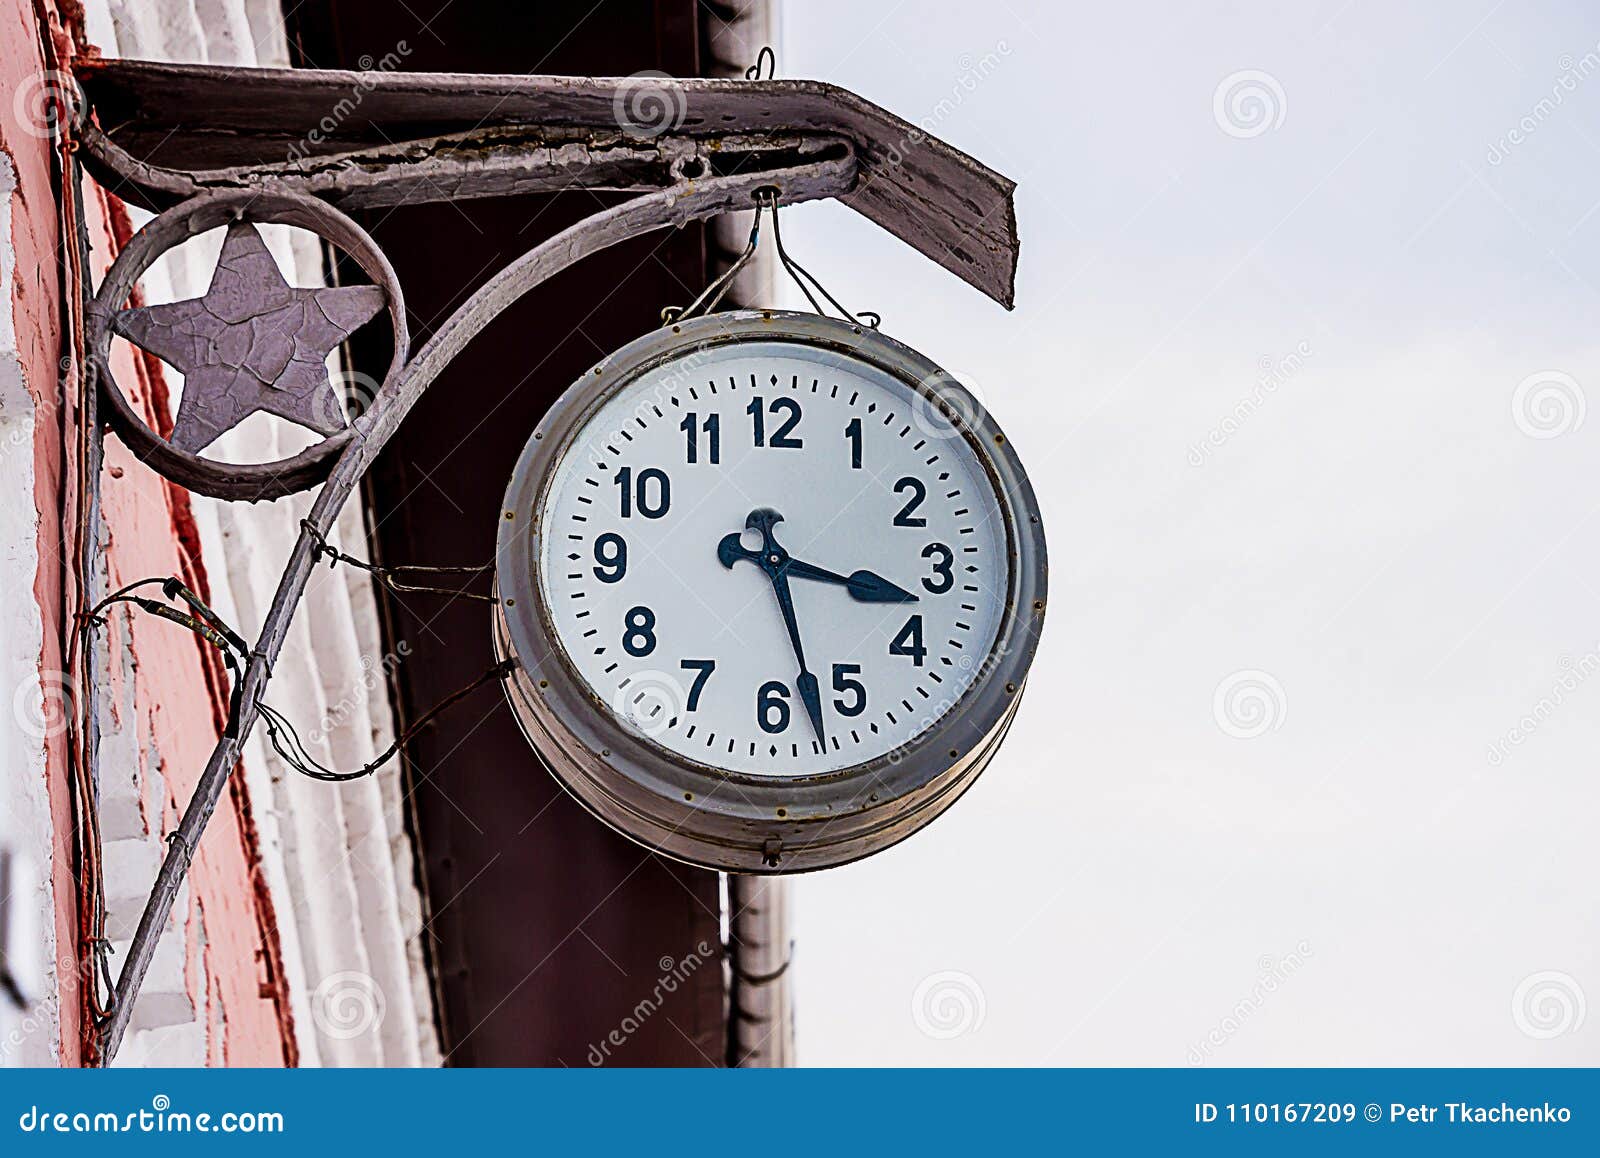 Поставь время на станции. Старые Вокзальные часы. Старинные Вокзальные часы. Часы на вокзале. Железнодорожные часы Вокзальные.